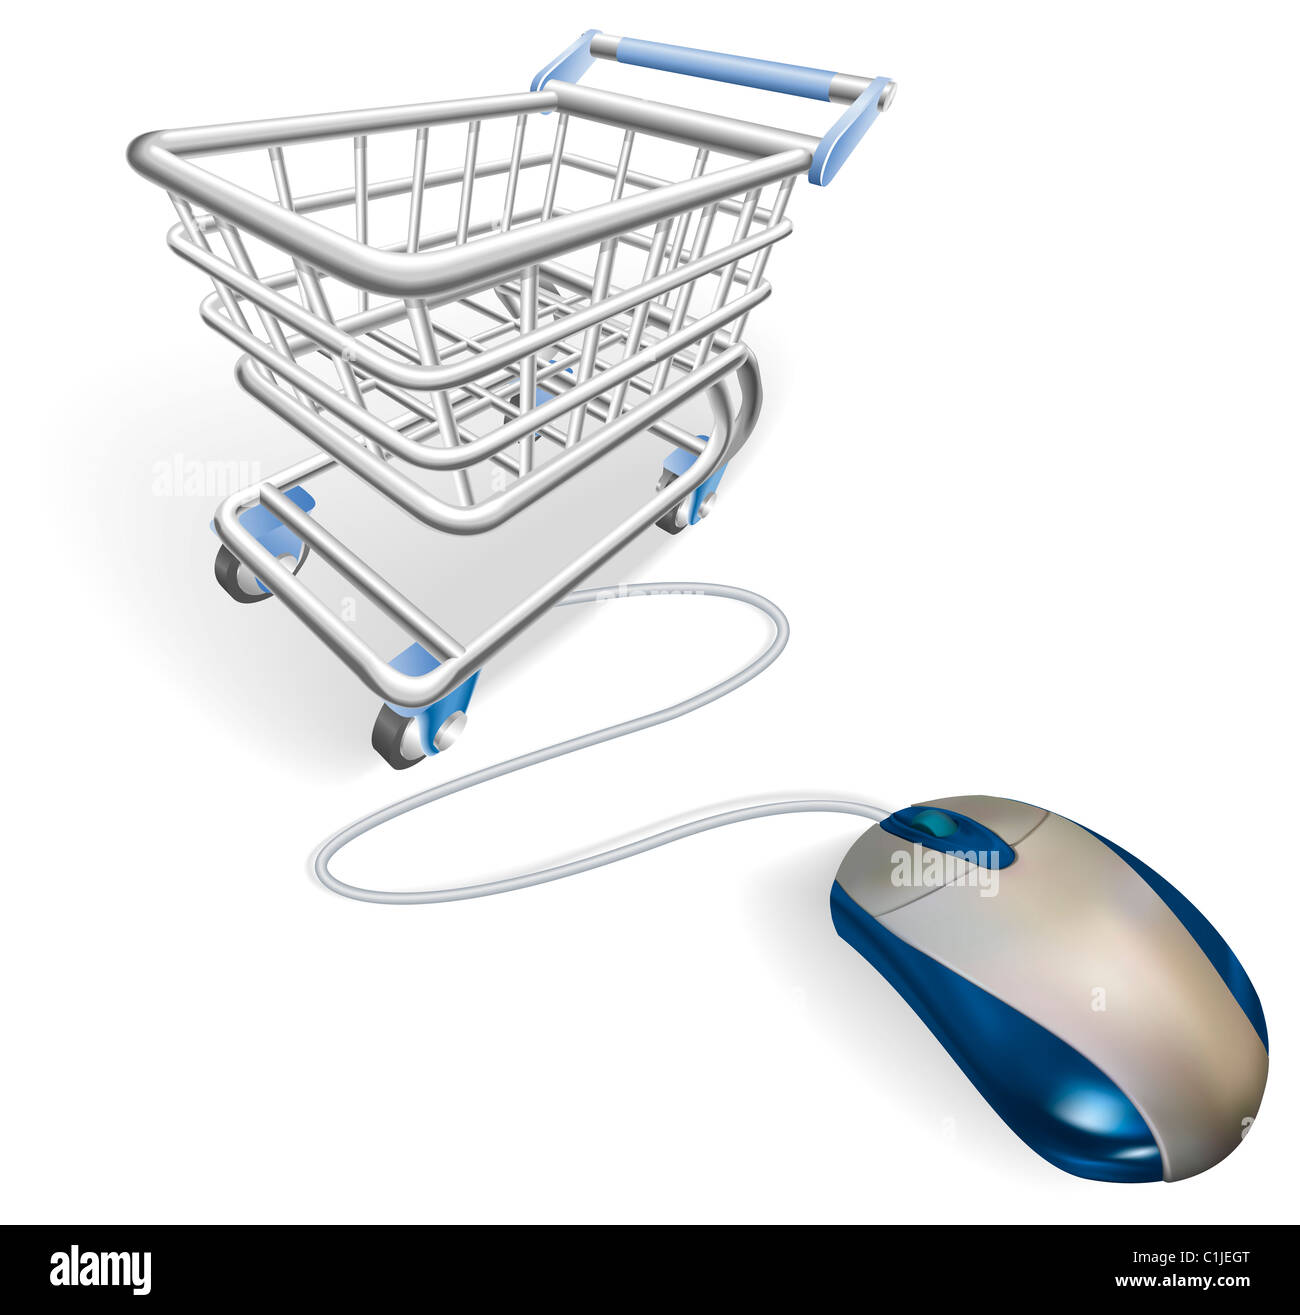 Une souris connectée à un panier chariot. Concept pour le shopping sur internet en ligne. Banque D'Images